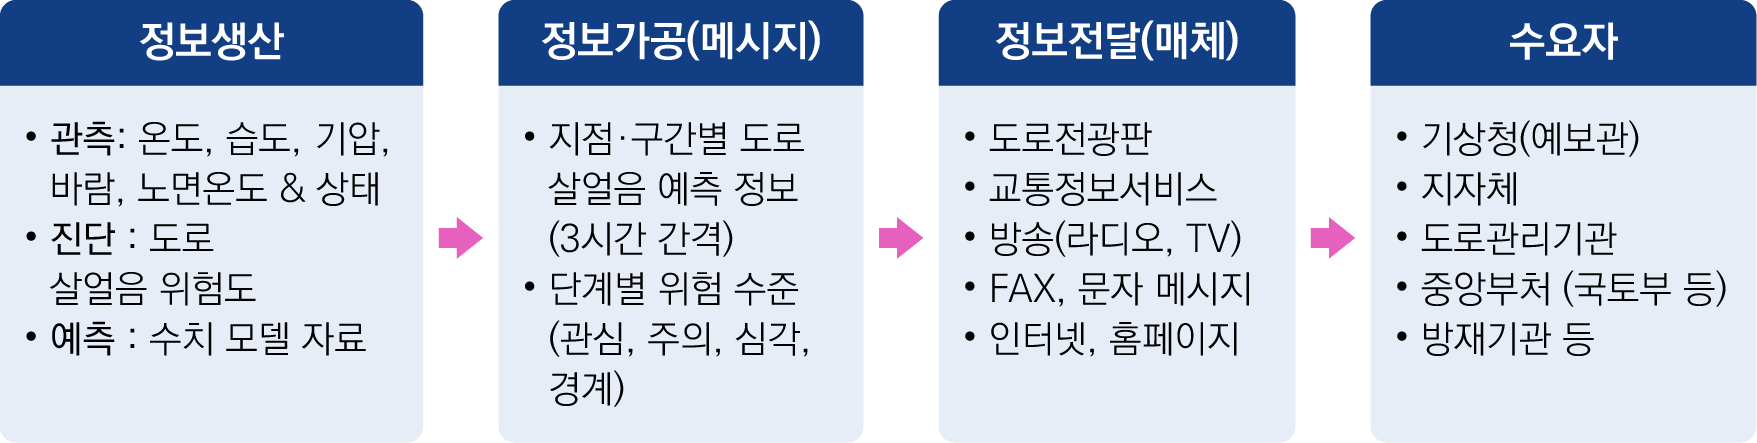 도로 살얼음 기상정보 서비스 개요 자료 : 서울 Public News 보도자료, 2020.11.24